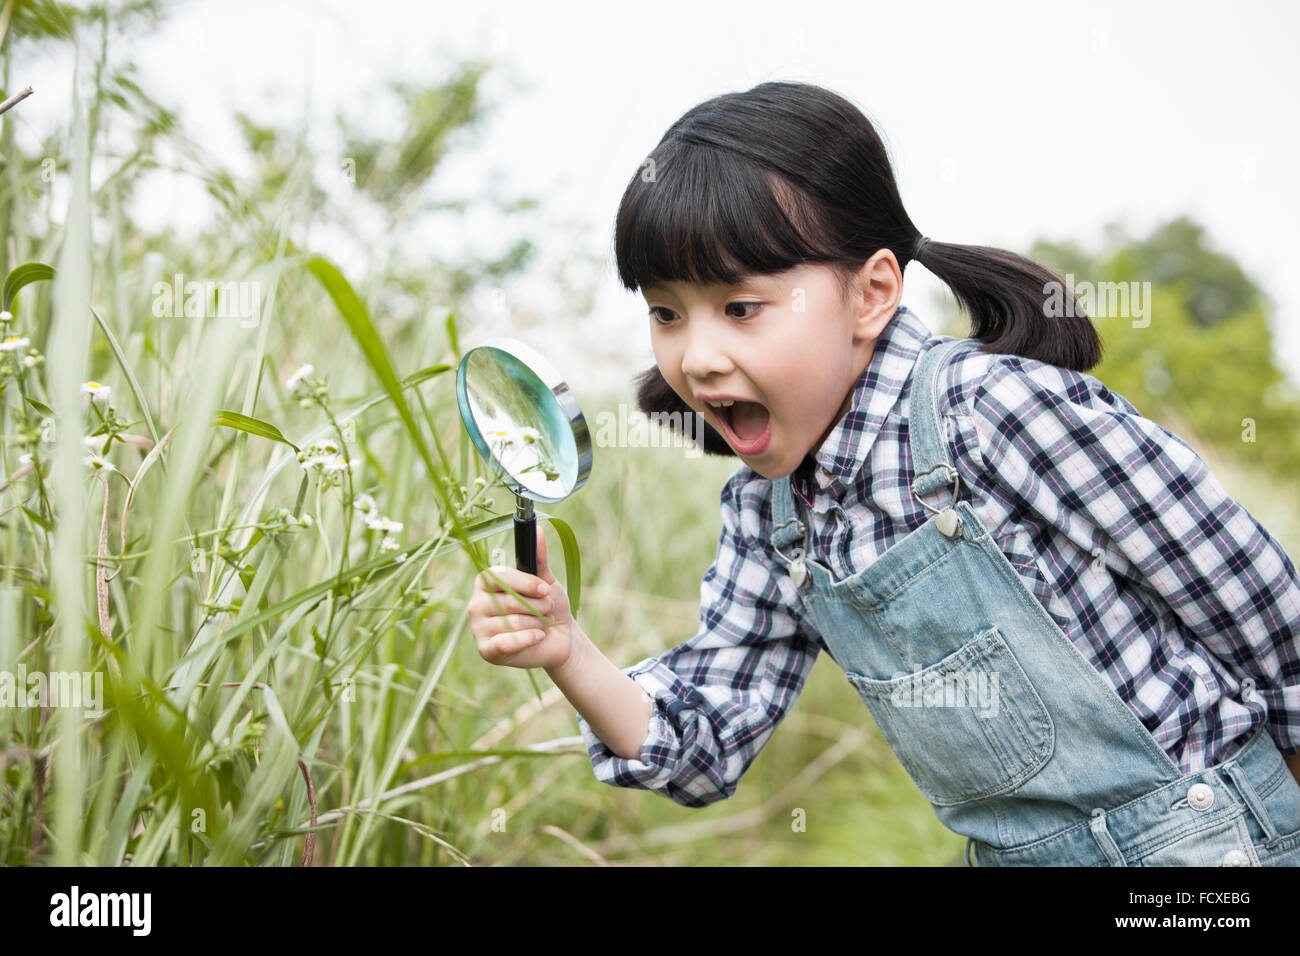 Chica observando las plantas a través de una lupa con una sonrisa en la sorpresa Foto de stock